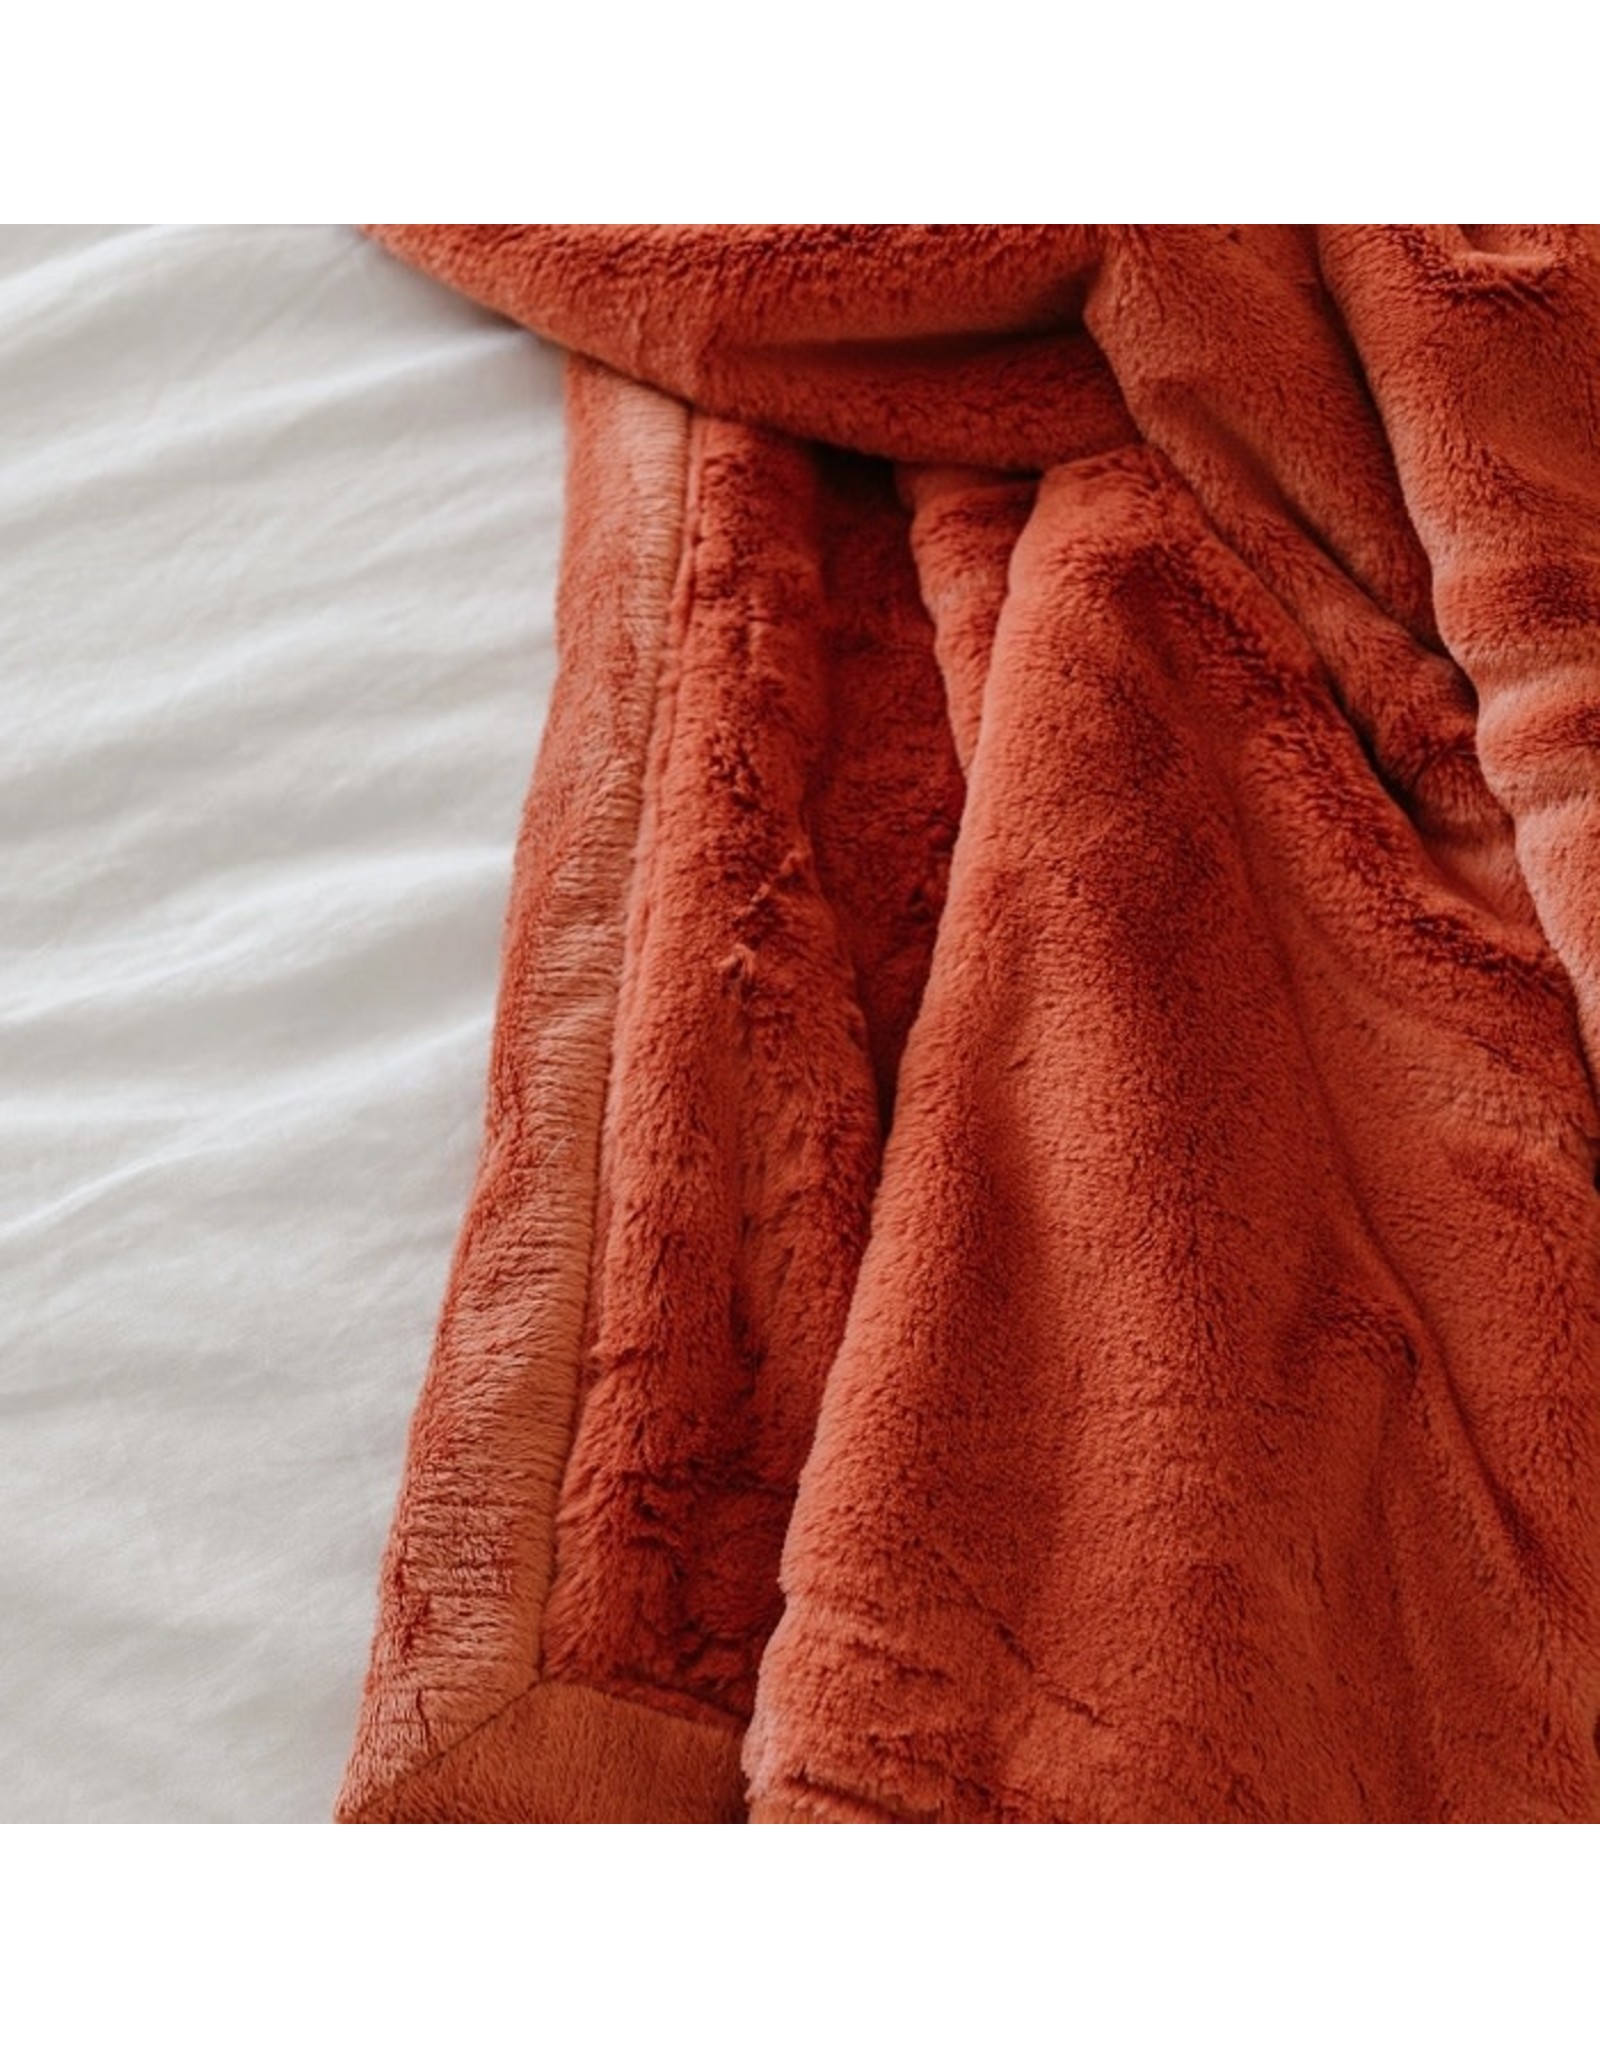 Saranoni Tangerine Lush Receiving Blanket